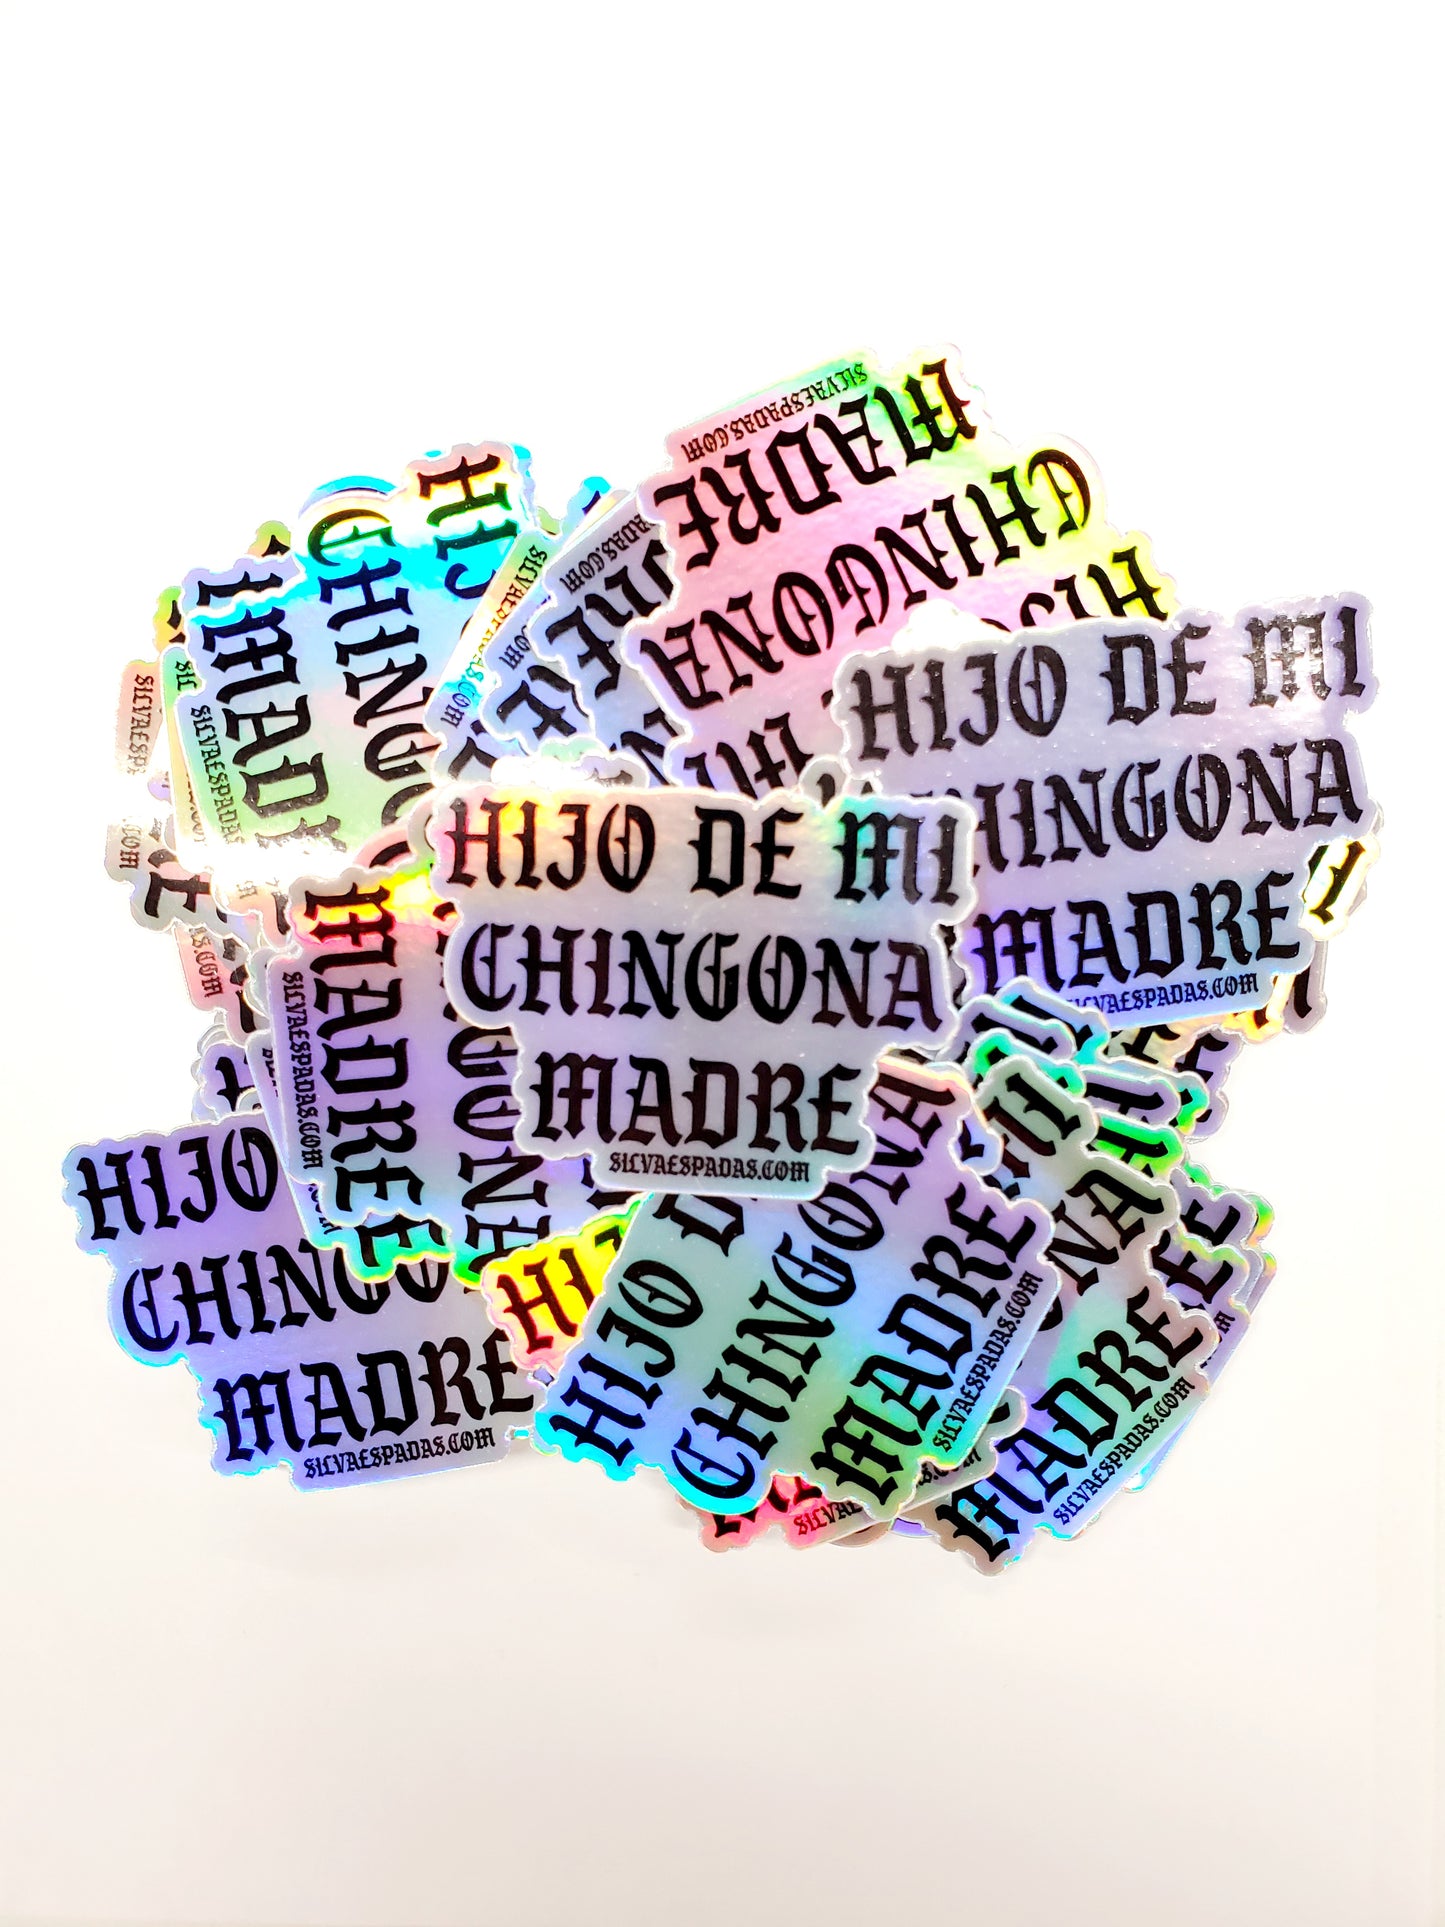 Hijo De Mi Chingona Madre Holographic Sticker